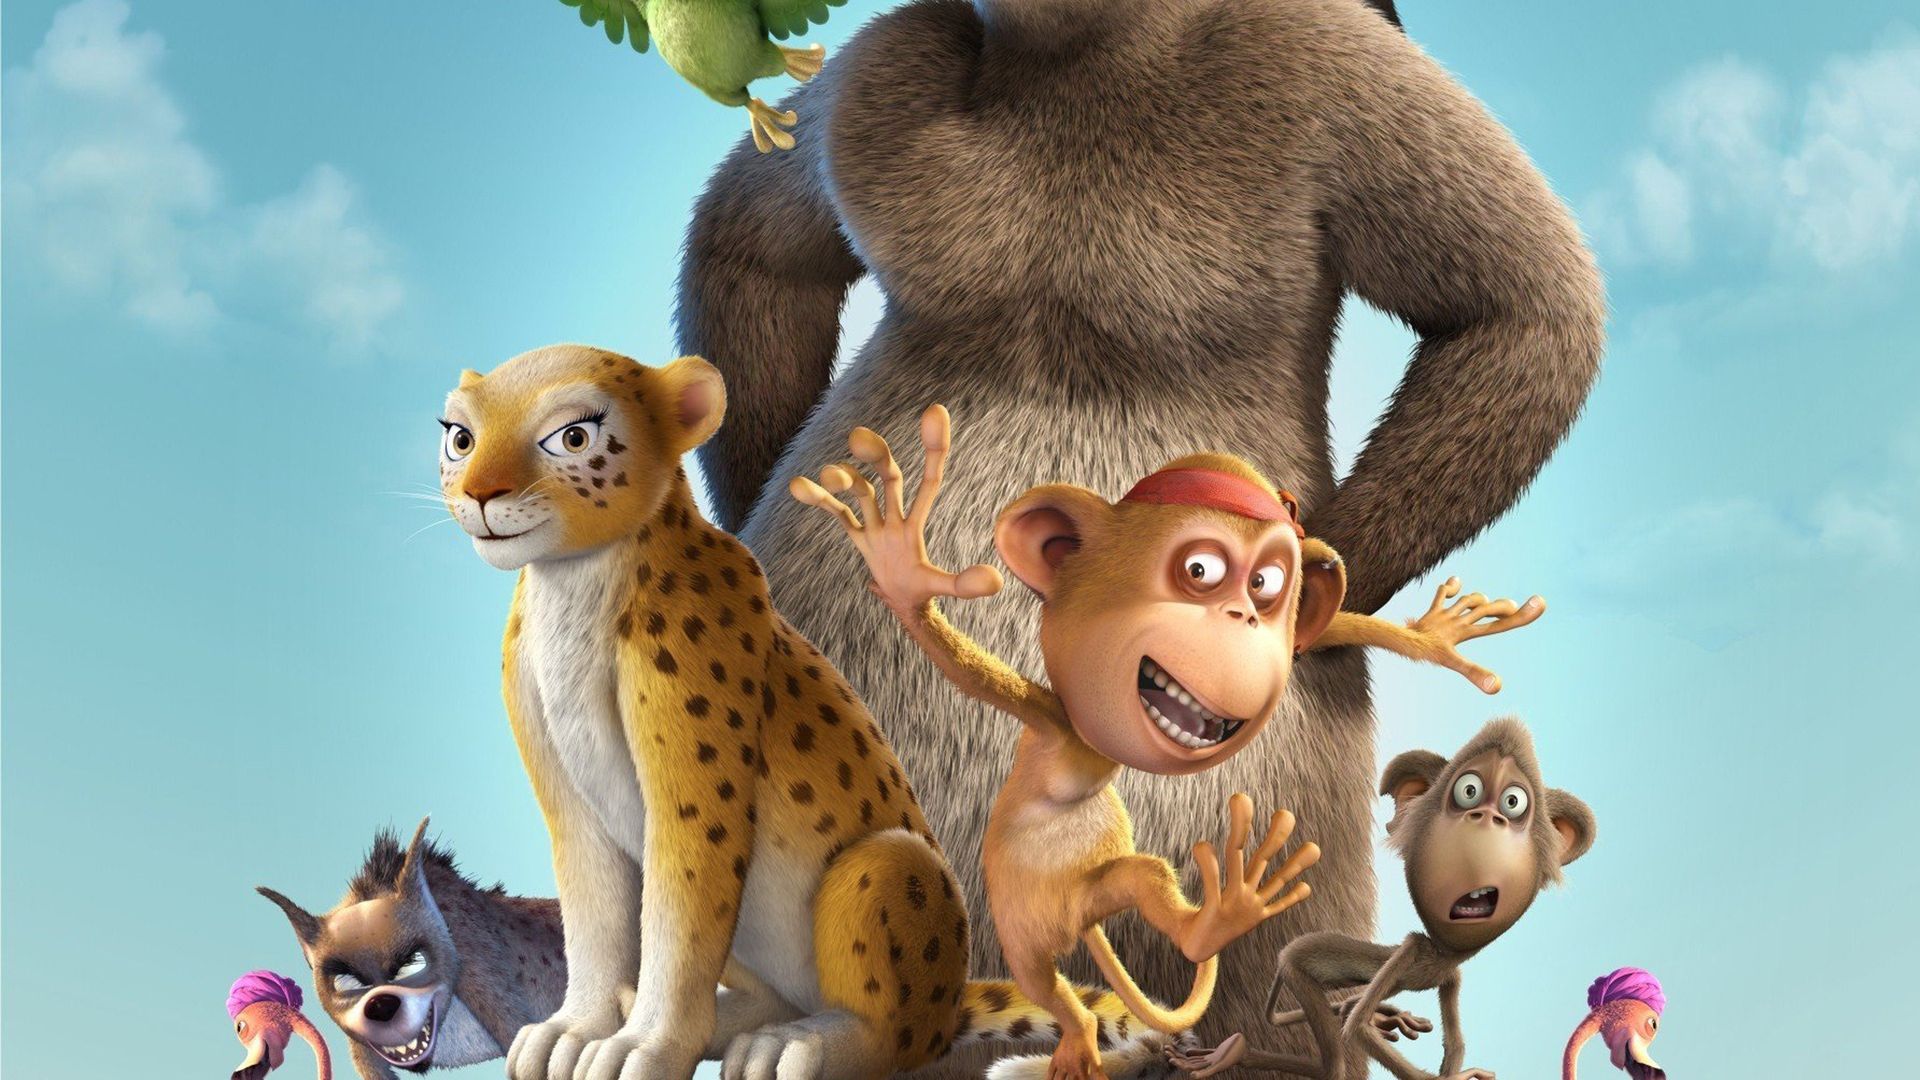 delhi safari movie budget